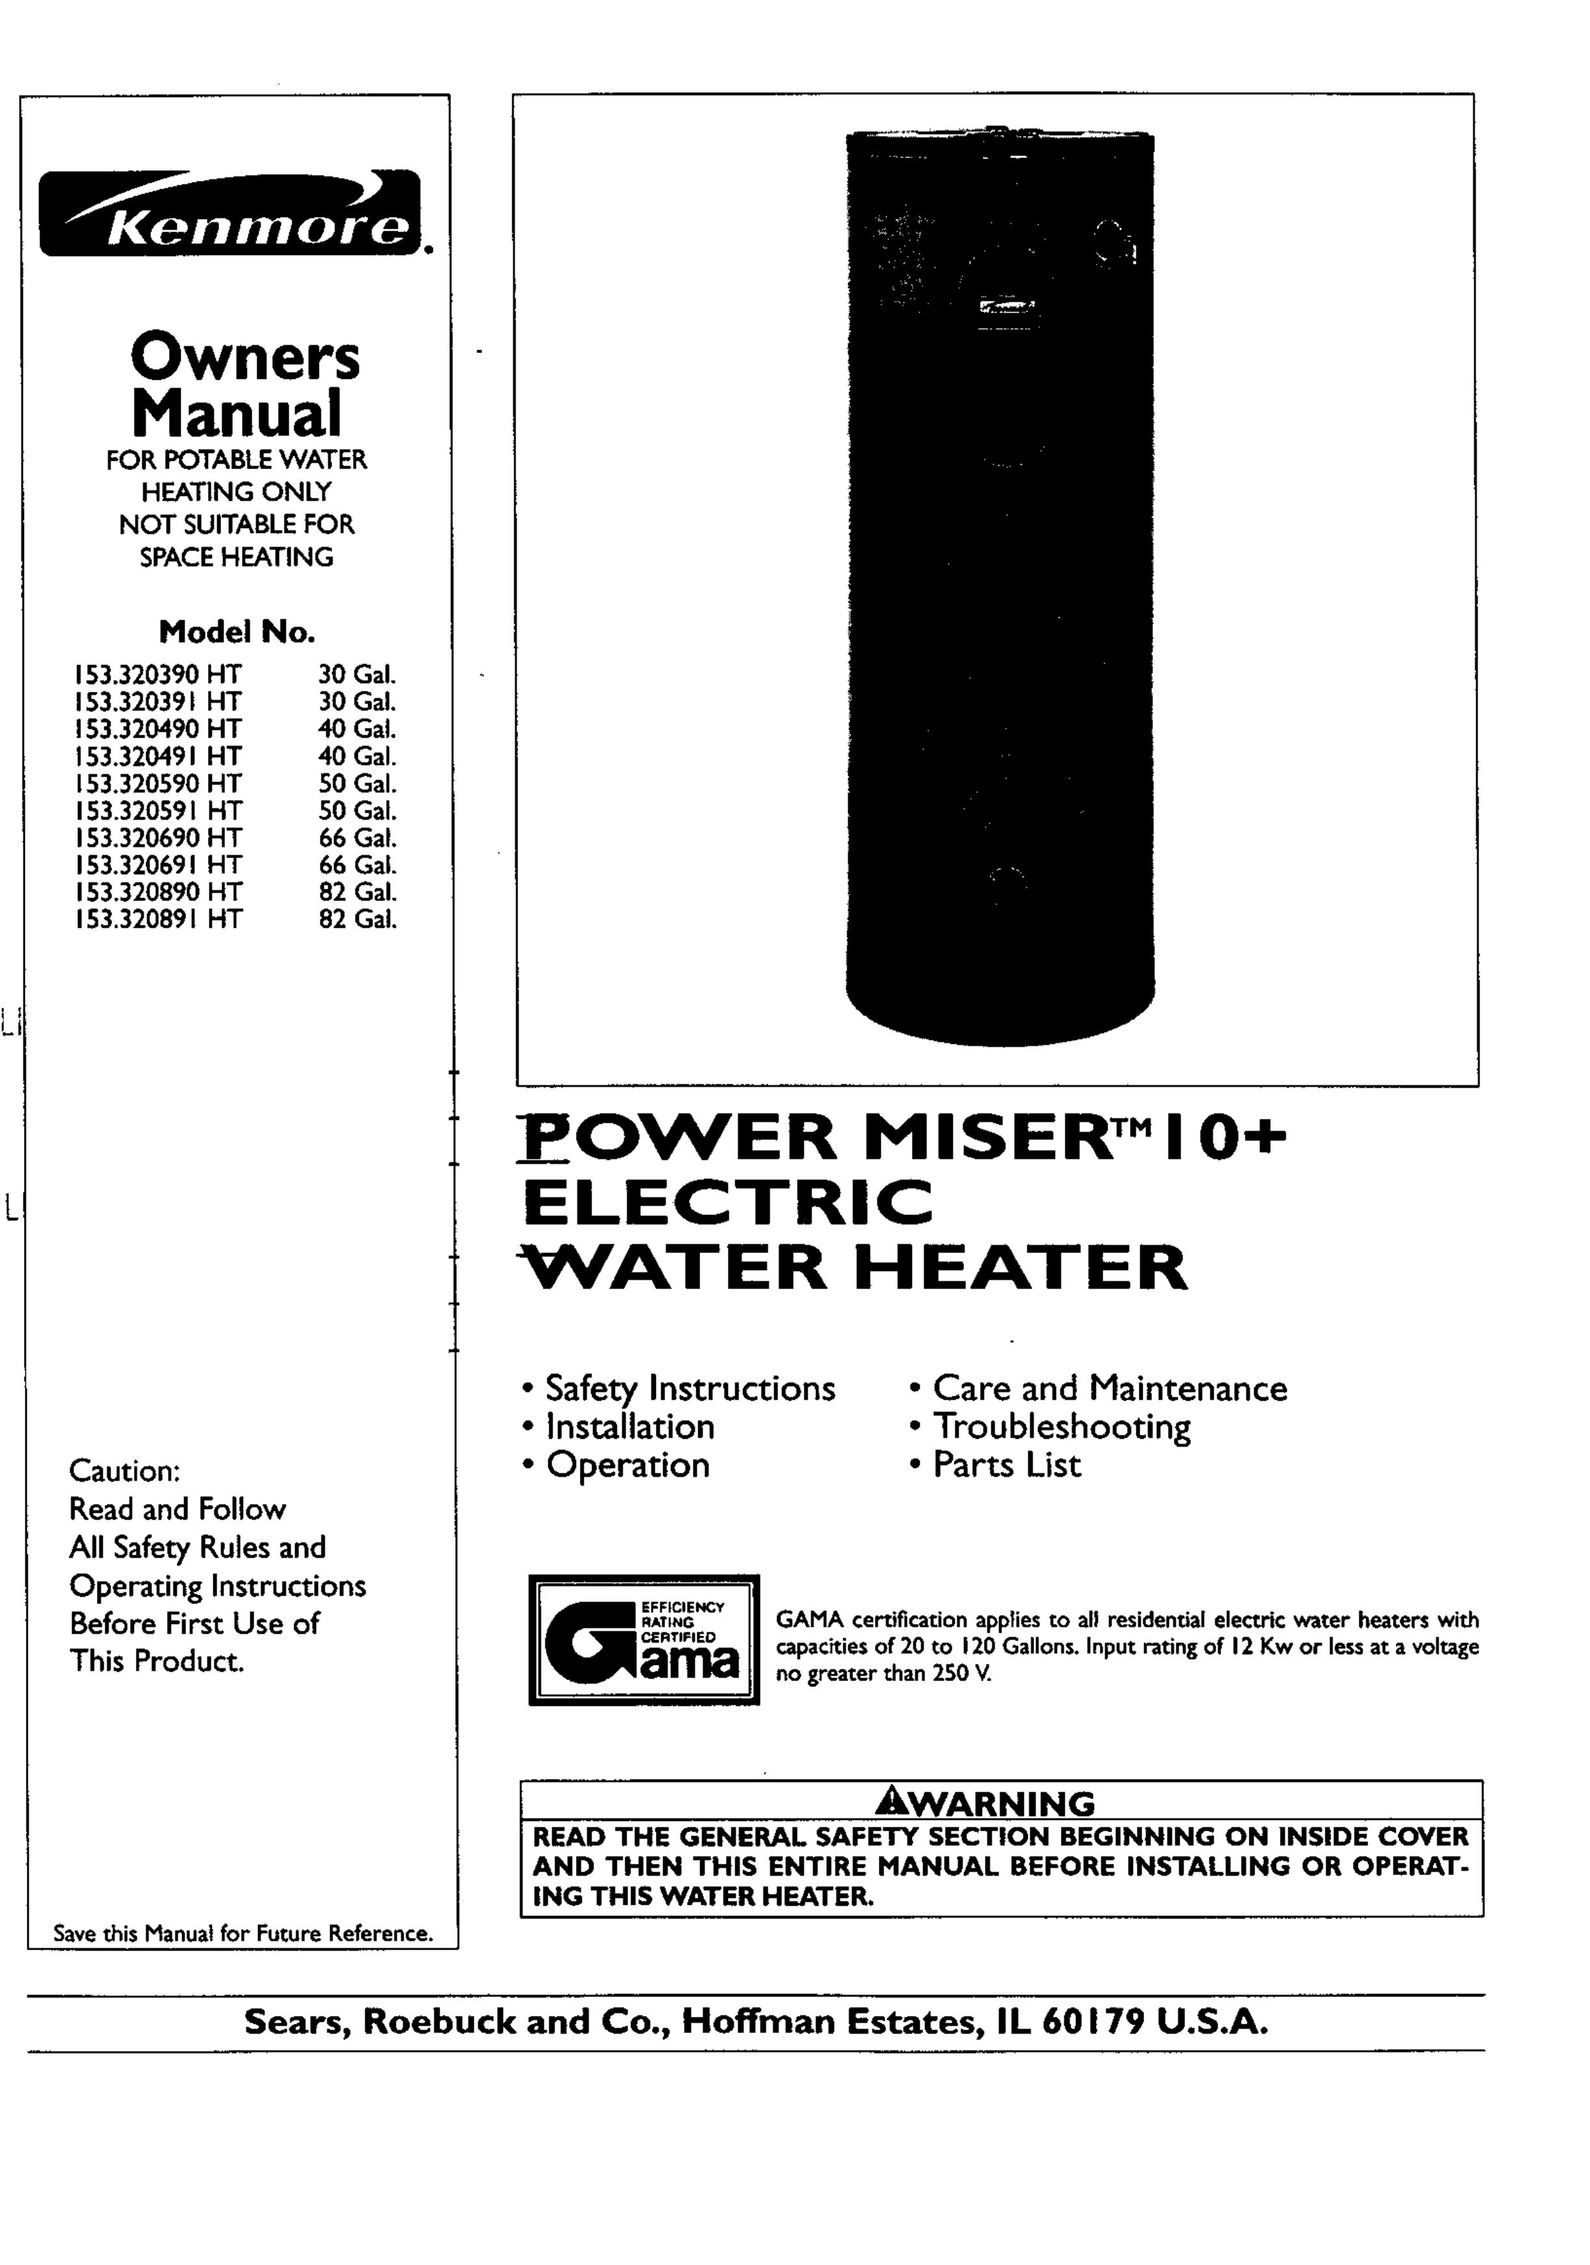 Kenmore 153.320891 HT 82 GAL Water Heater User Manual